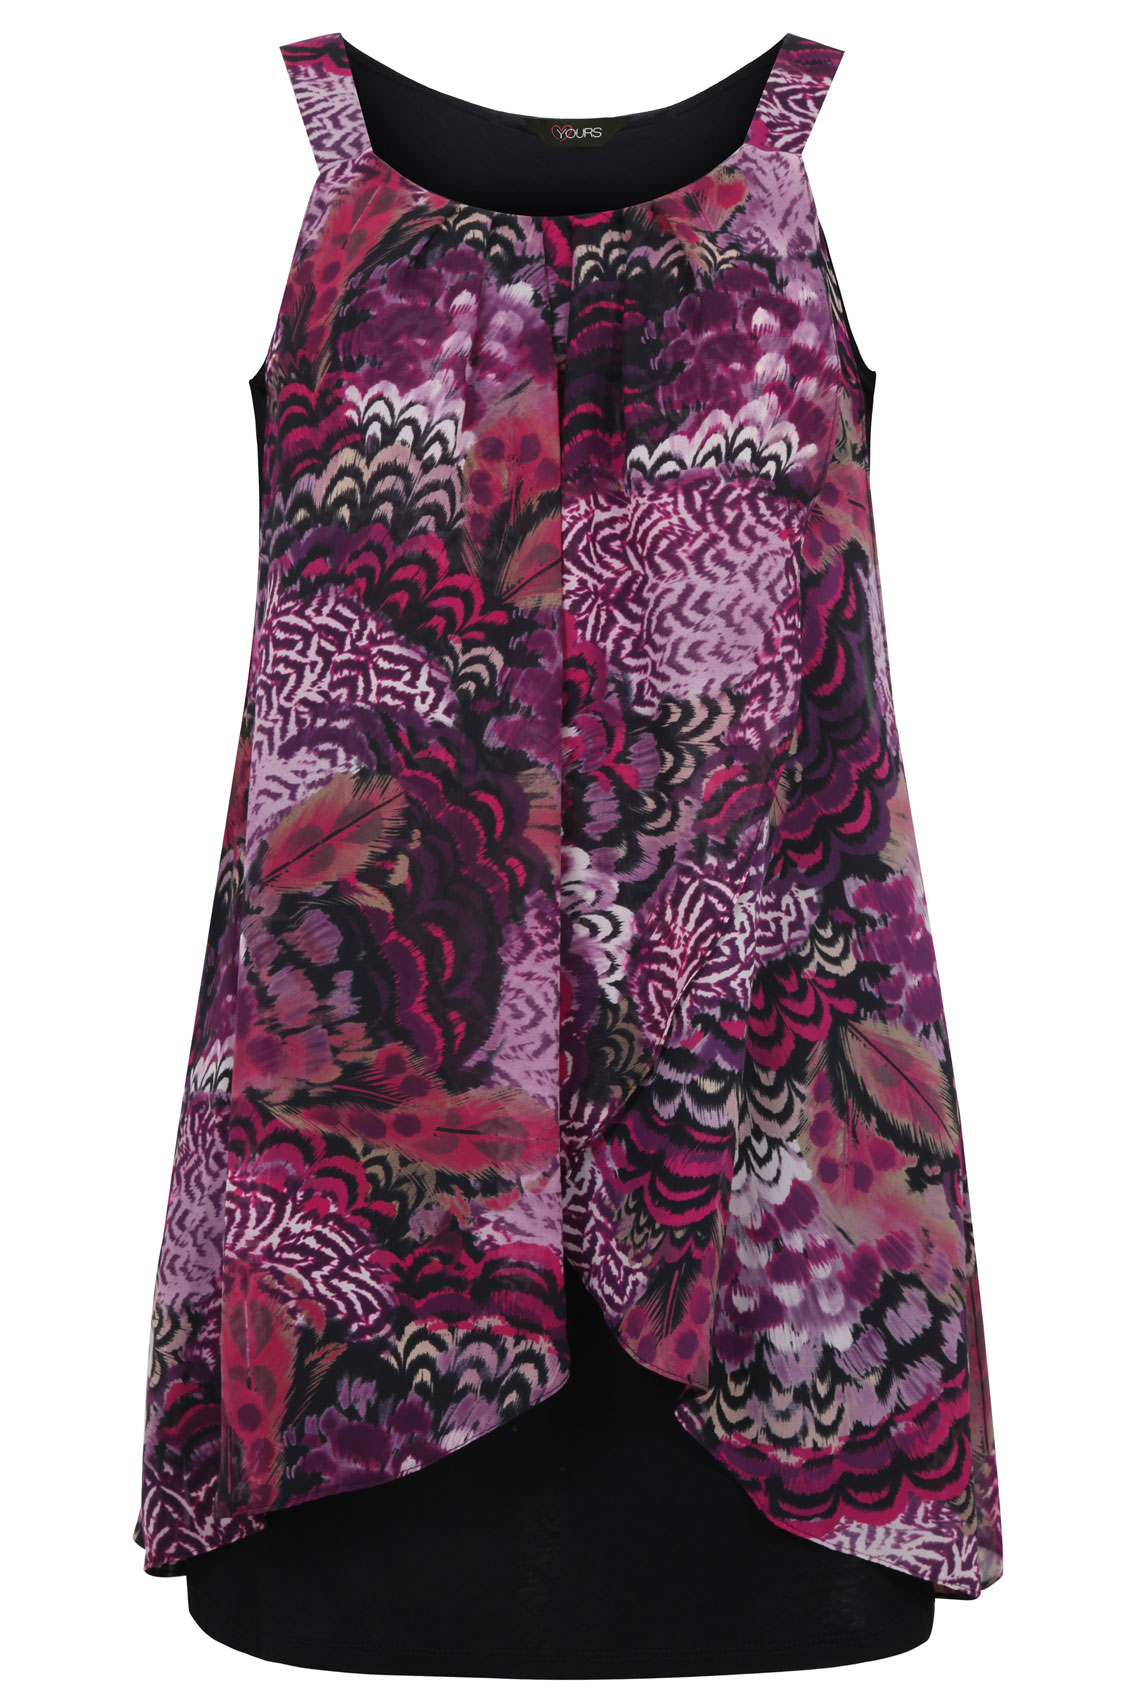 Black And Purple Feather Print Chiffon Overlay Tunic Dress plus size 16 ...